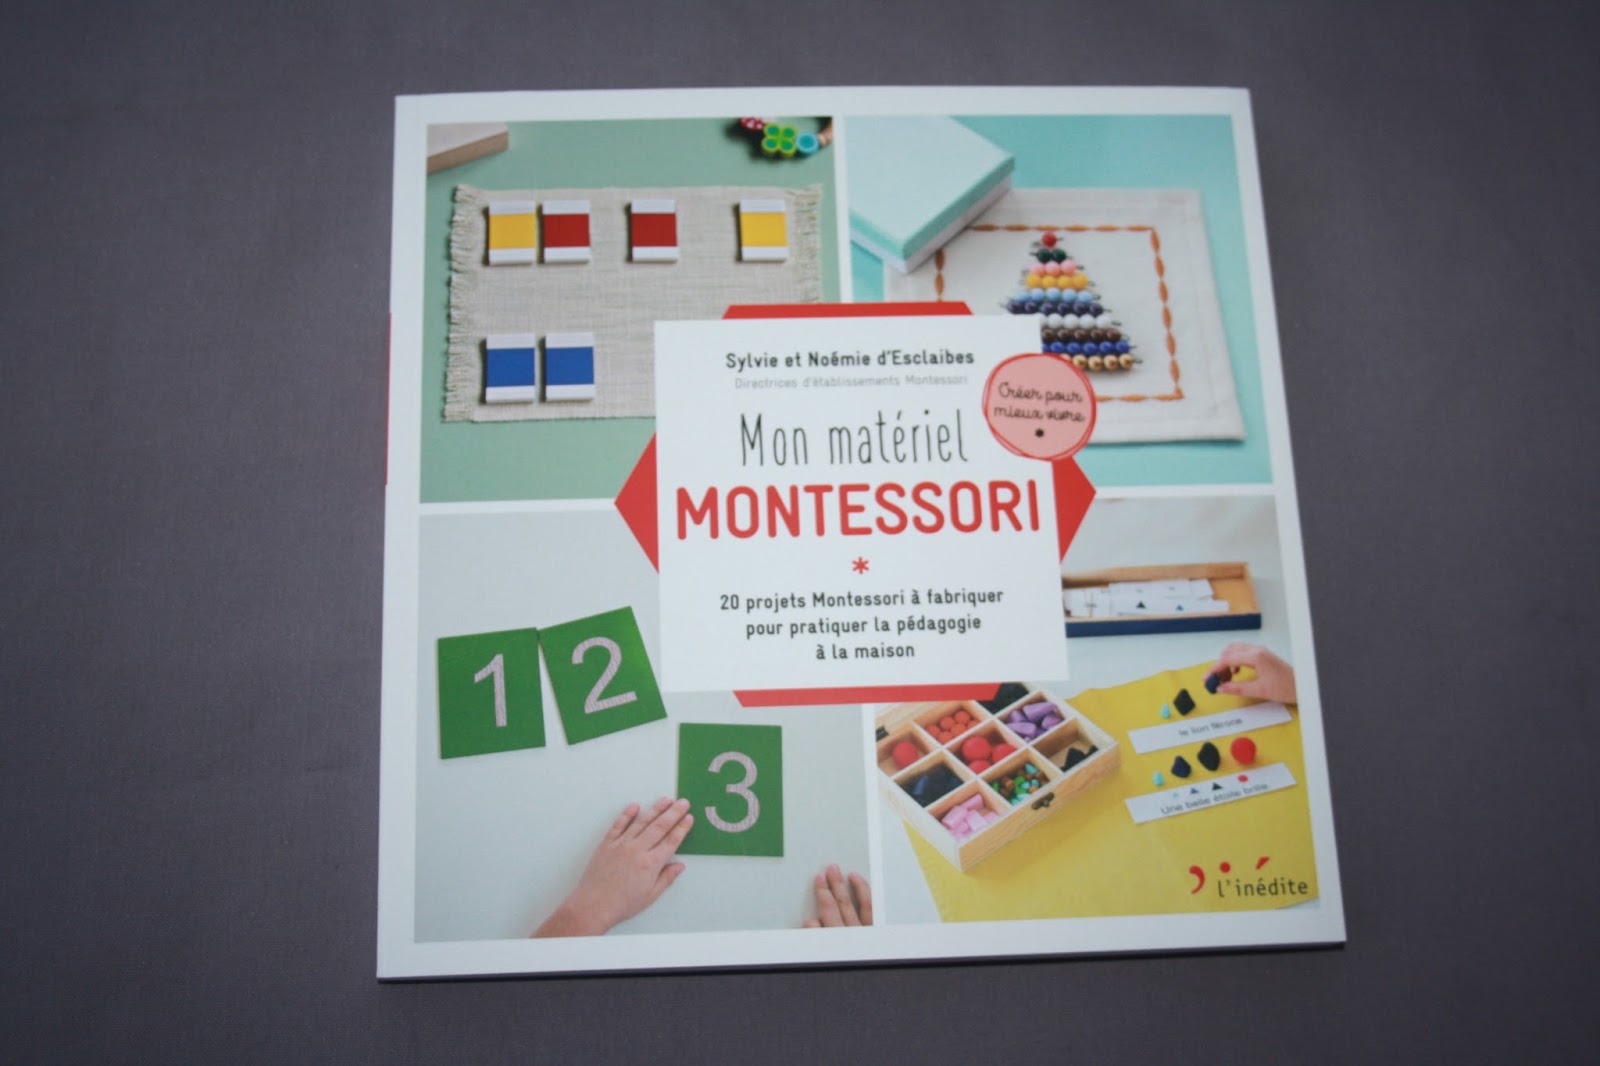 Mon matériel Montessori de Sylvie et Noémie d'Esclaibes - MvWm